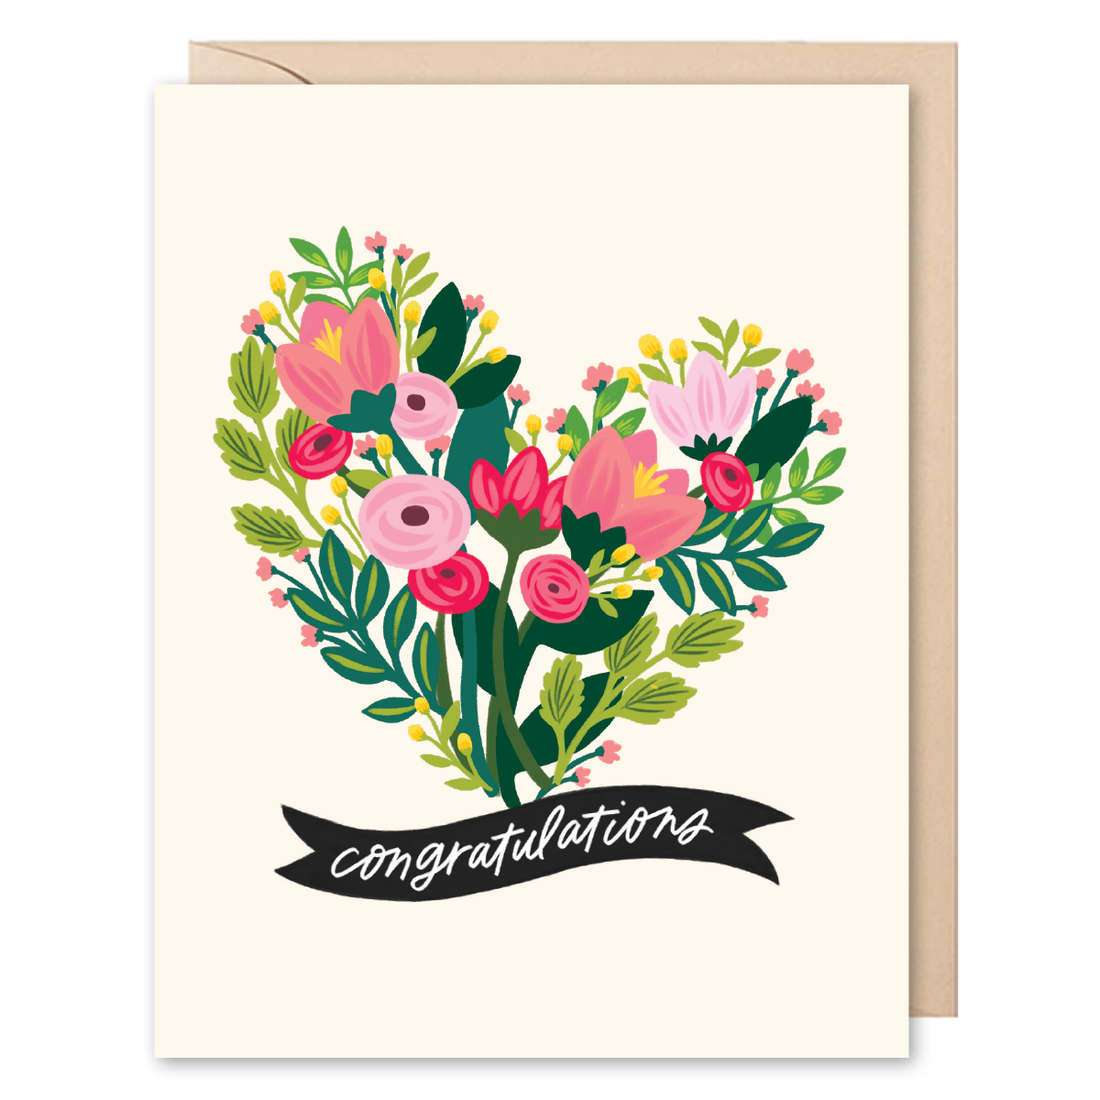 Congratulations Flower Card